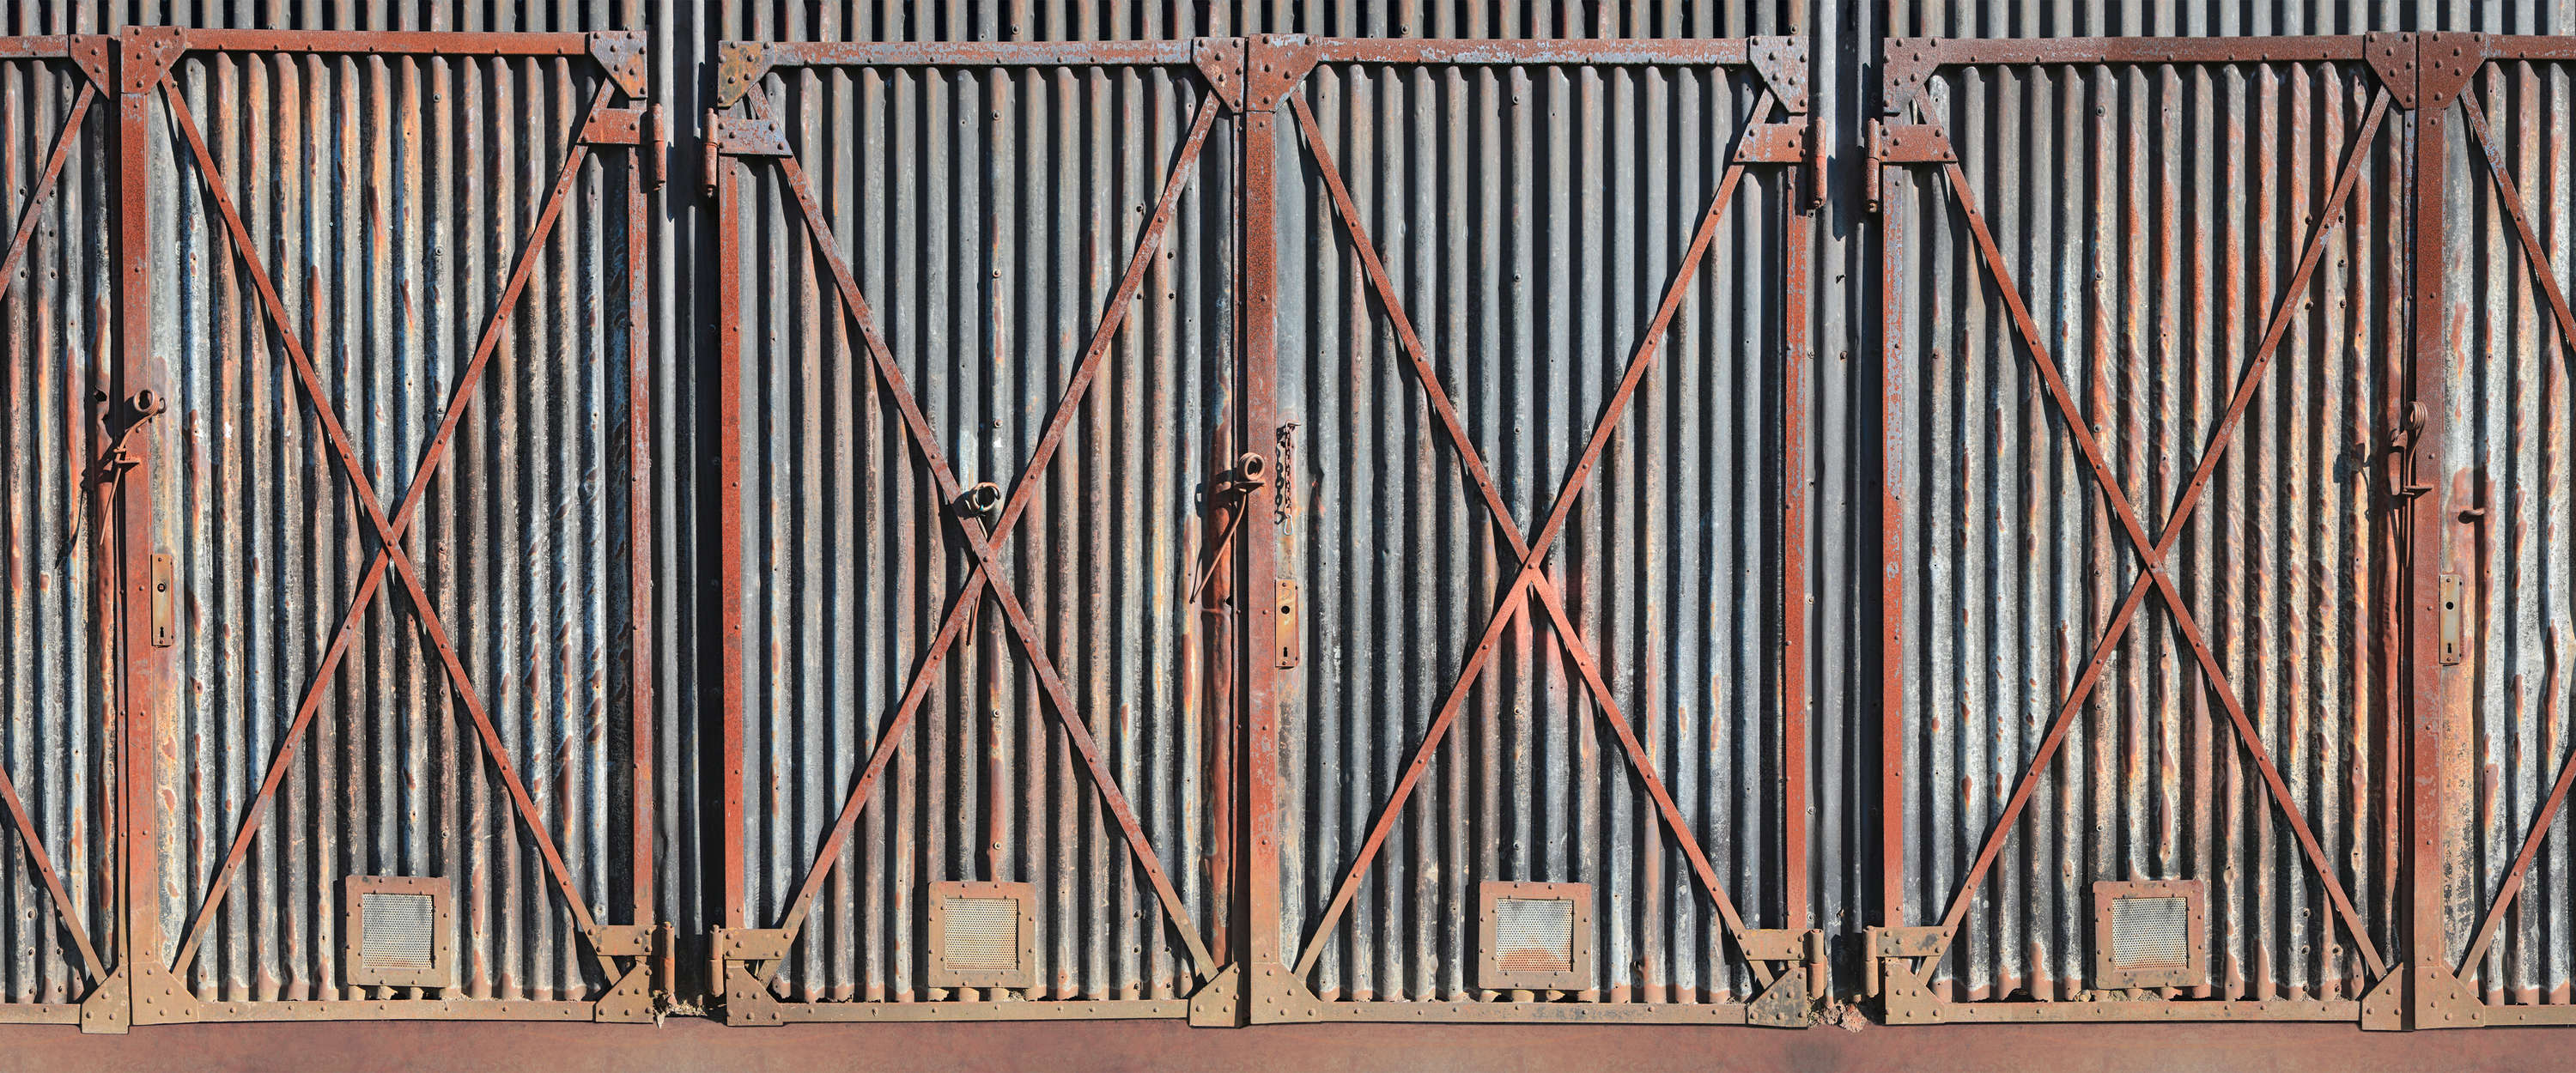             Fotomurali cancello in acciaio arrugginito in stile industriale
        